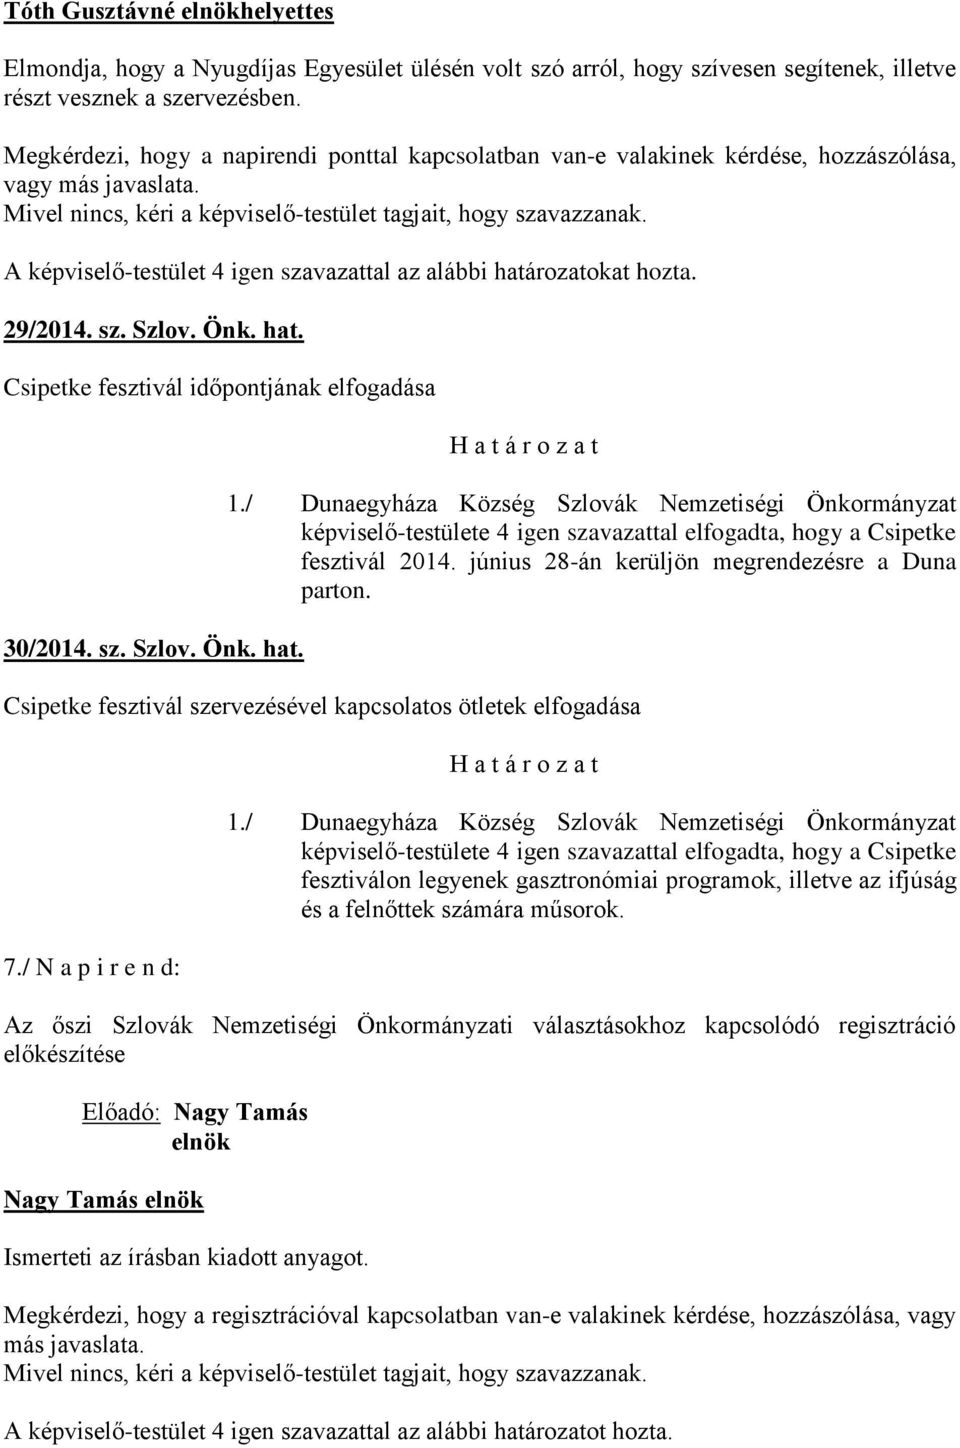 Önk. hat. Csipetke fesztivál időpontjának elfogadása 30/2014. sz. Szlov. Önk. hat. képviselő-testülete 4 igen szavazattal elfogadta, hogy a Csipetke fesztivál 2014.